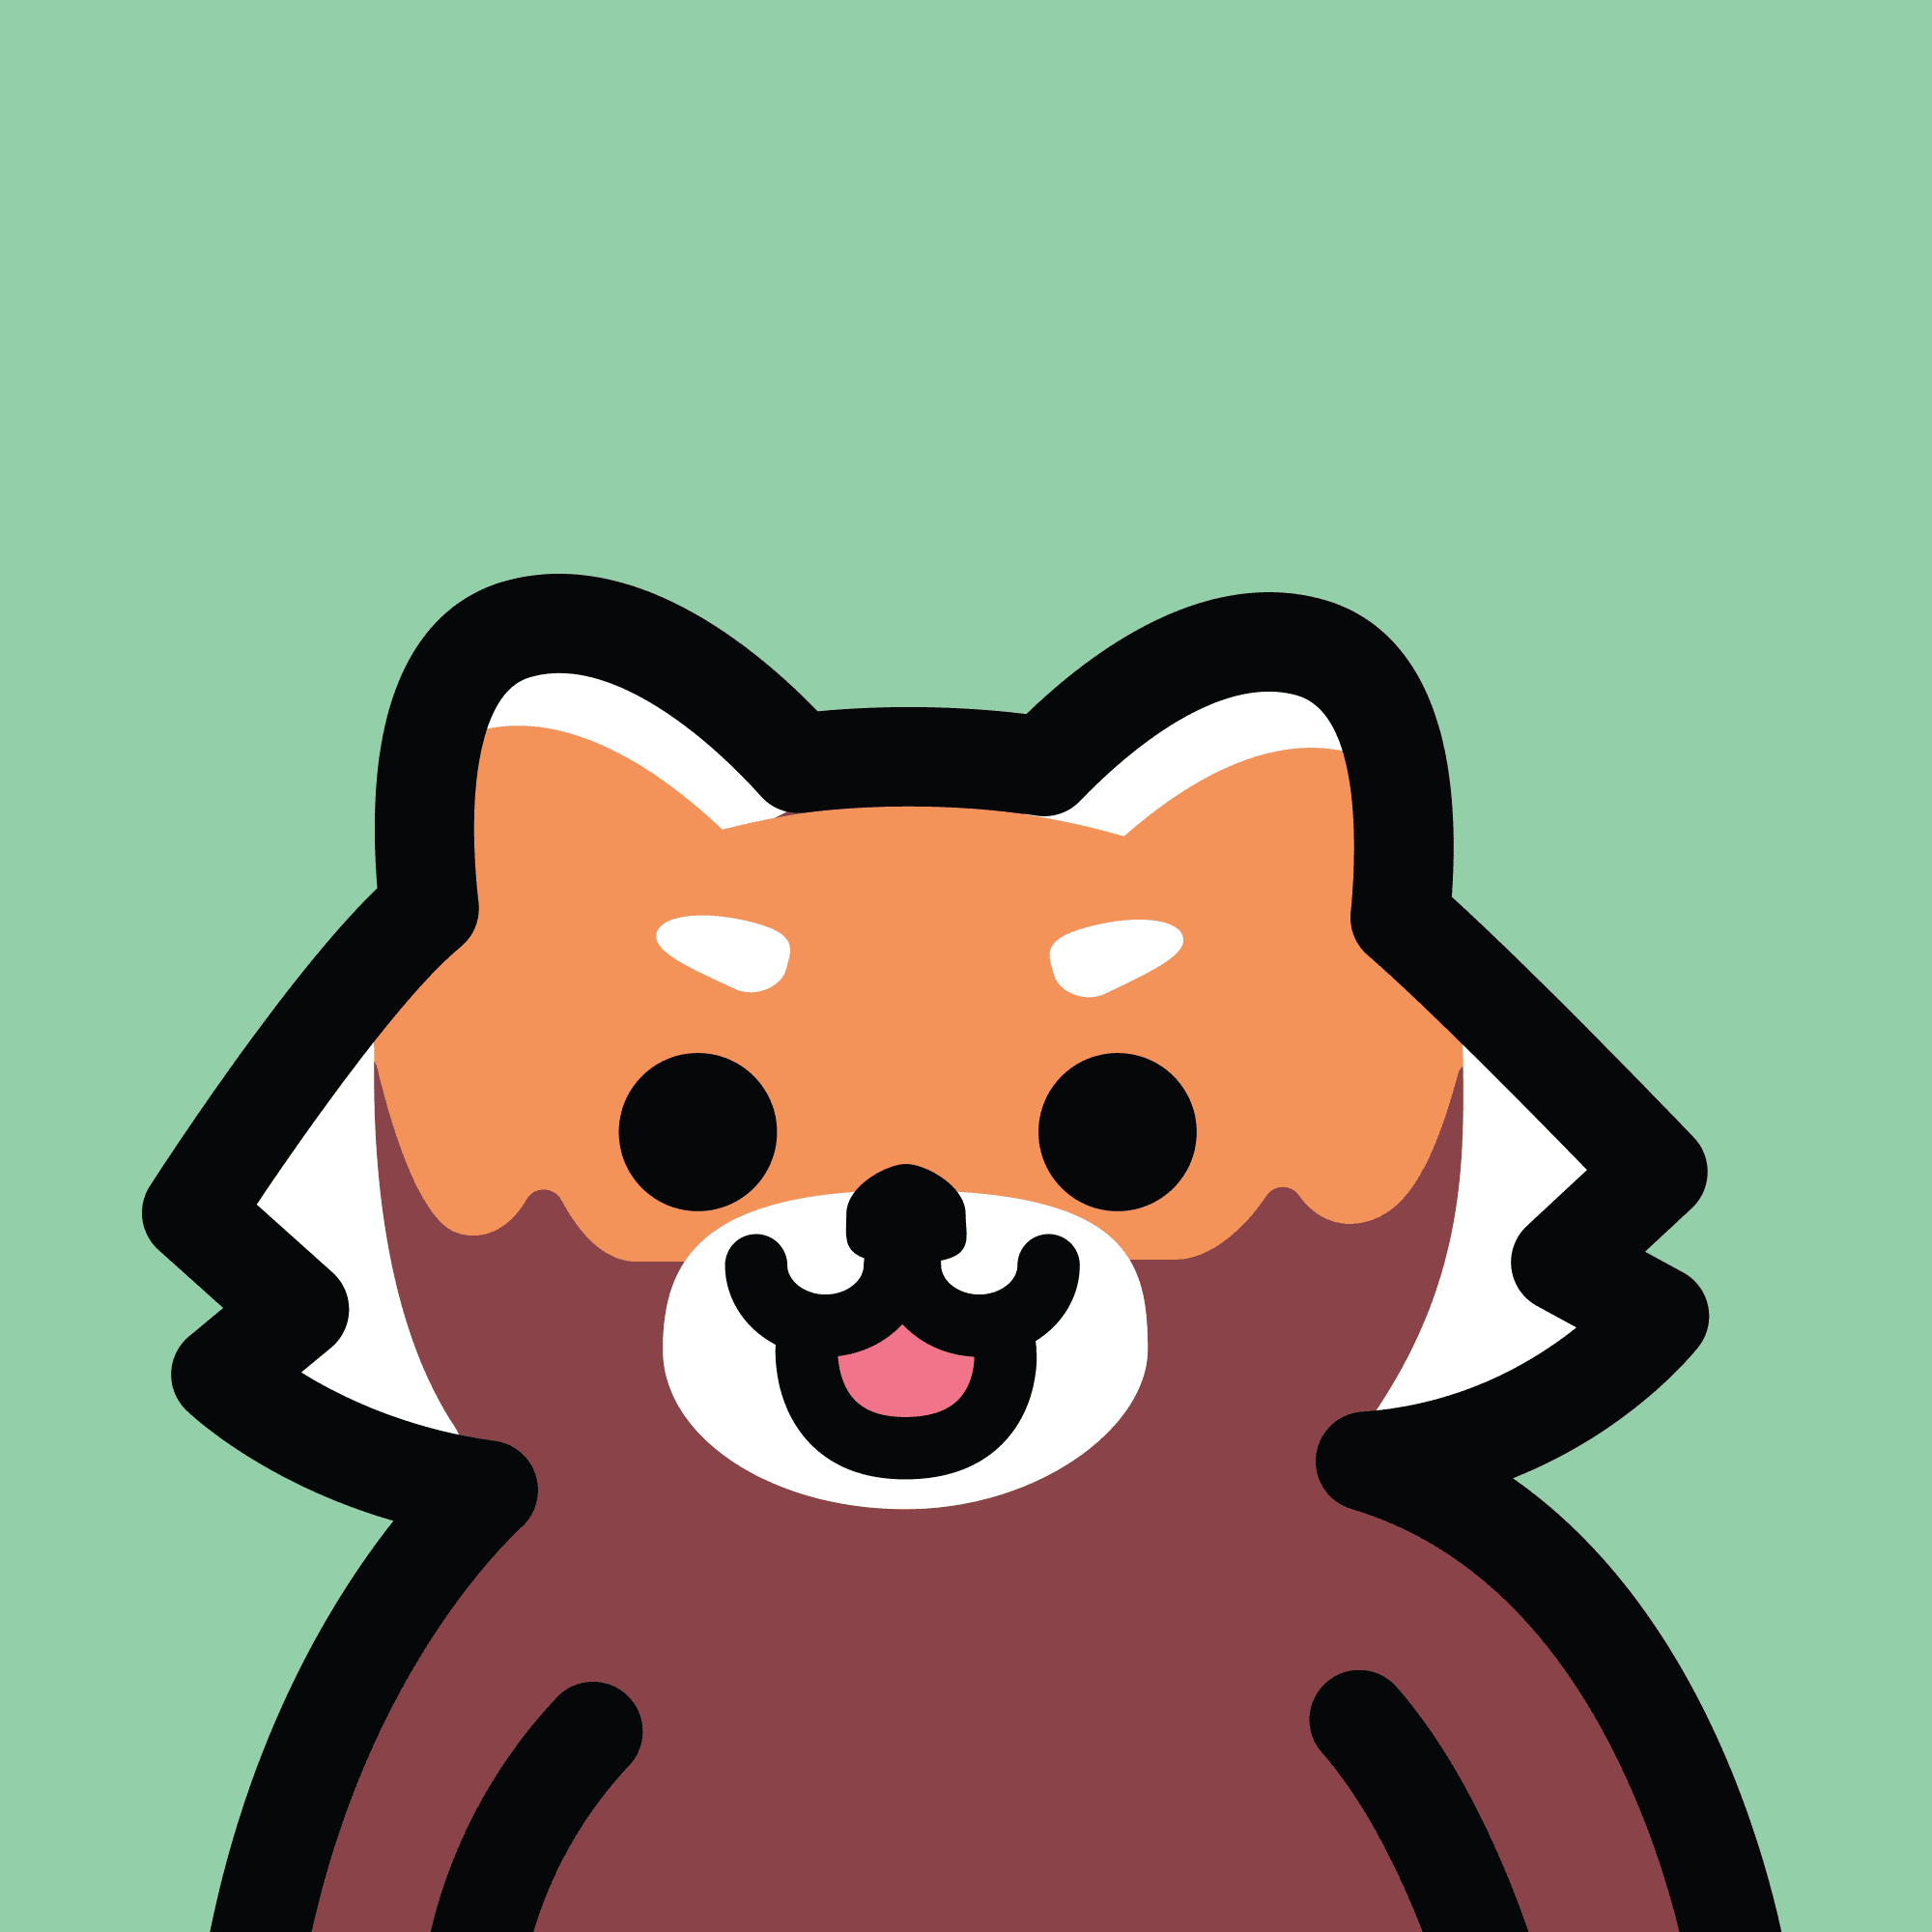 Red Panda Friend